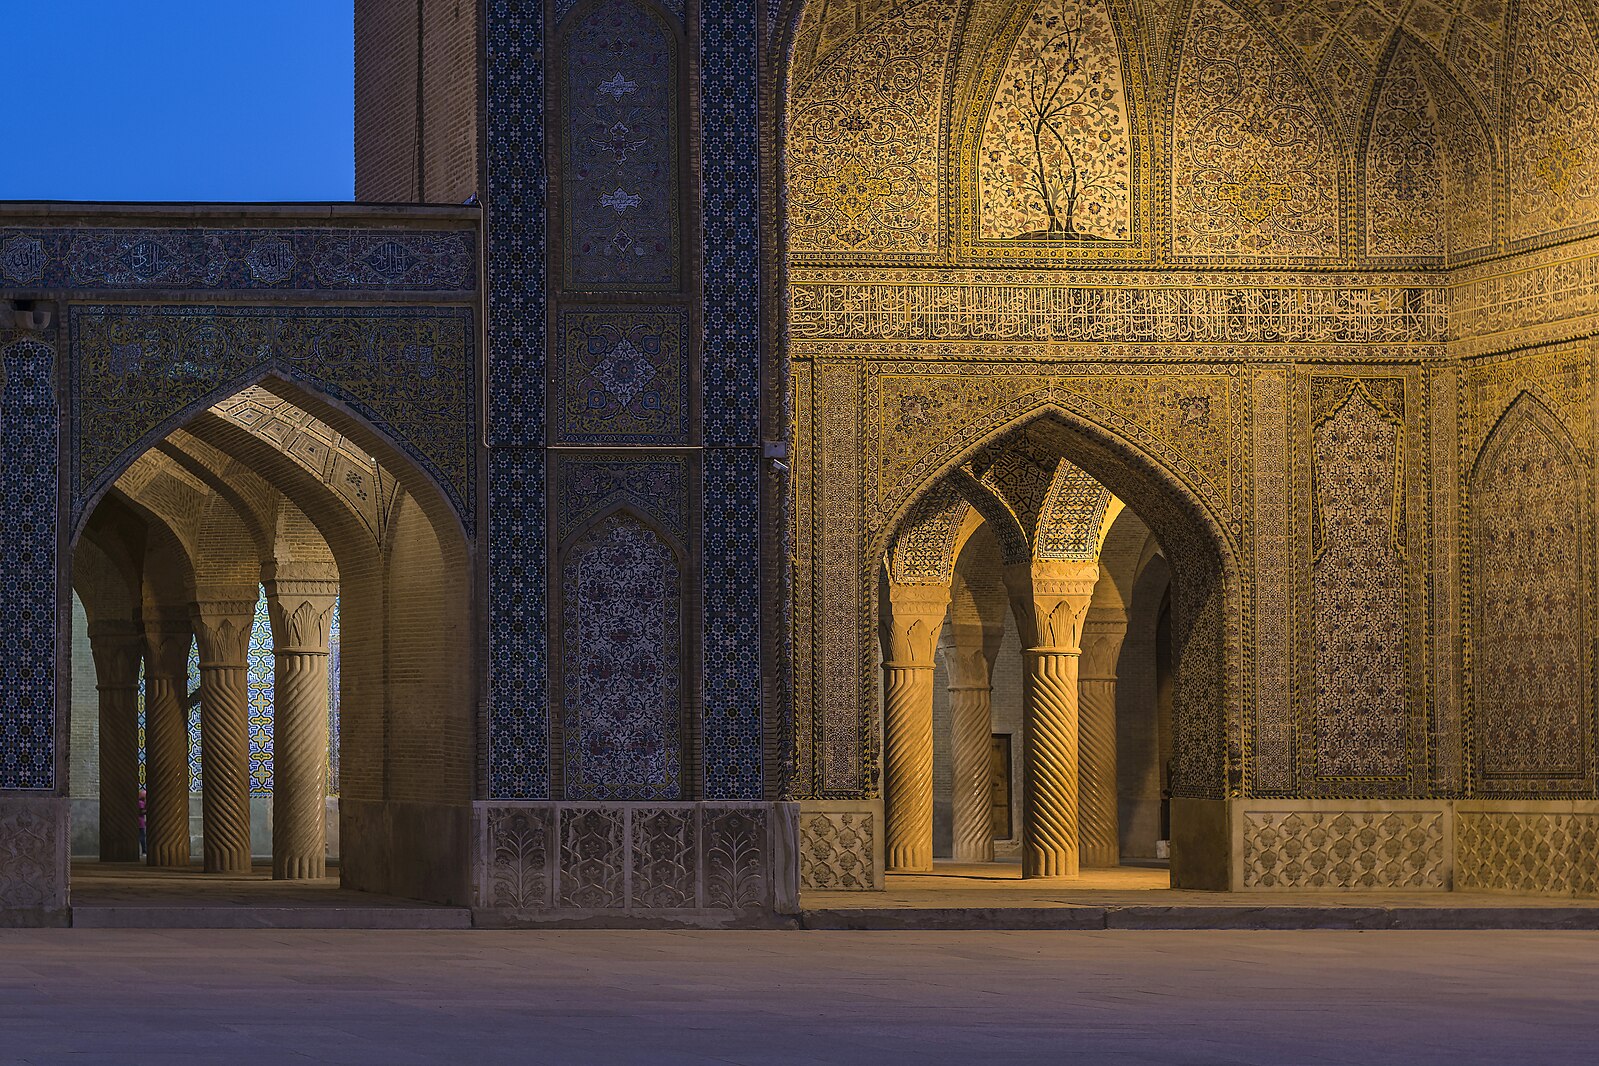 An Iranian mosque's exterior at night